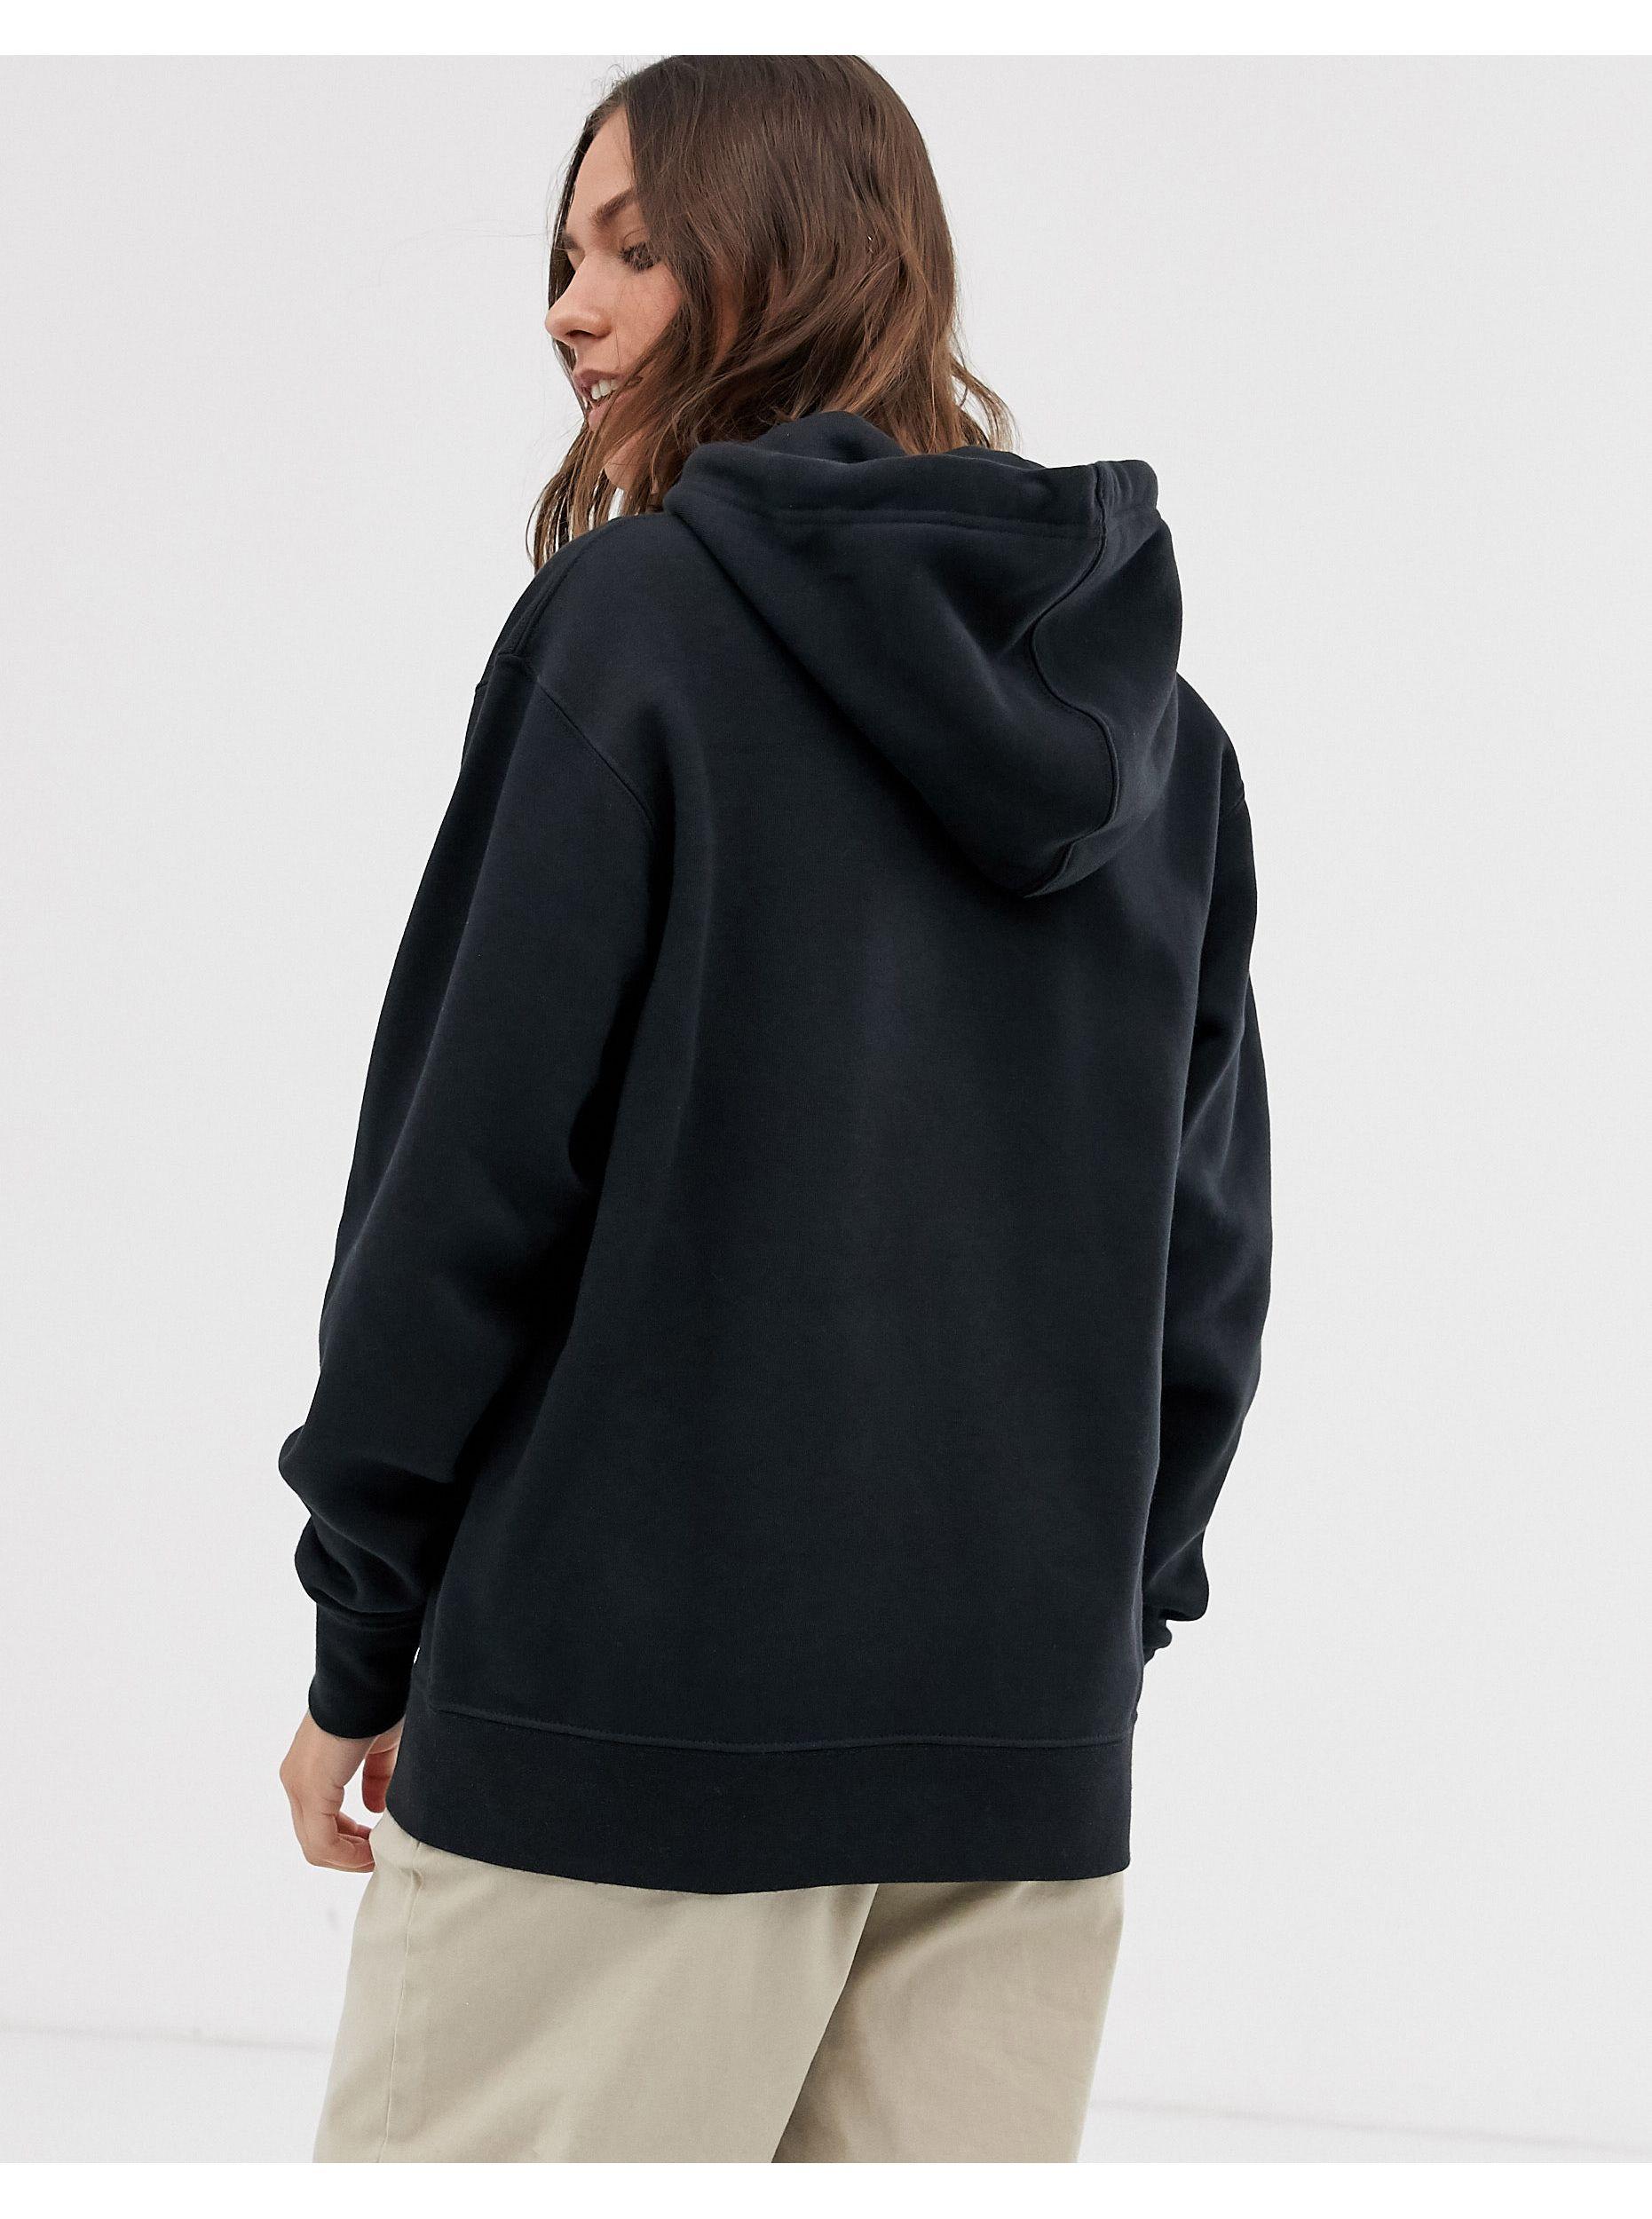 oversized black nike hoodie